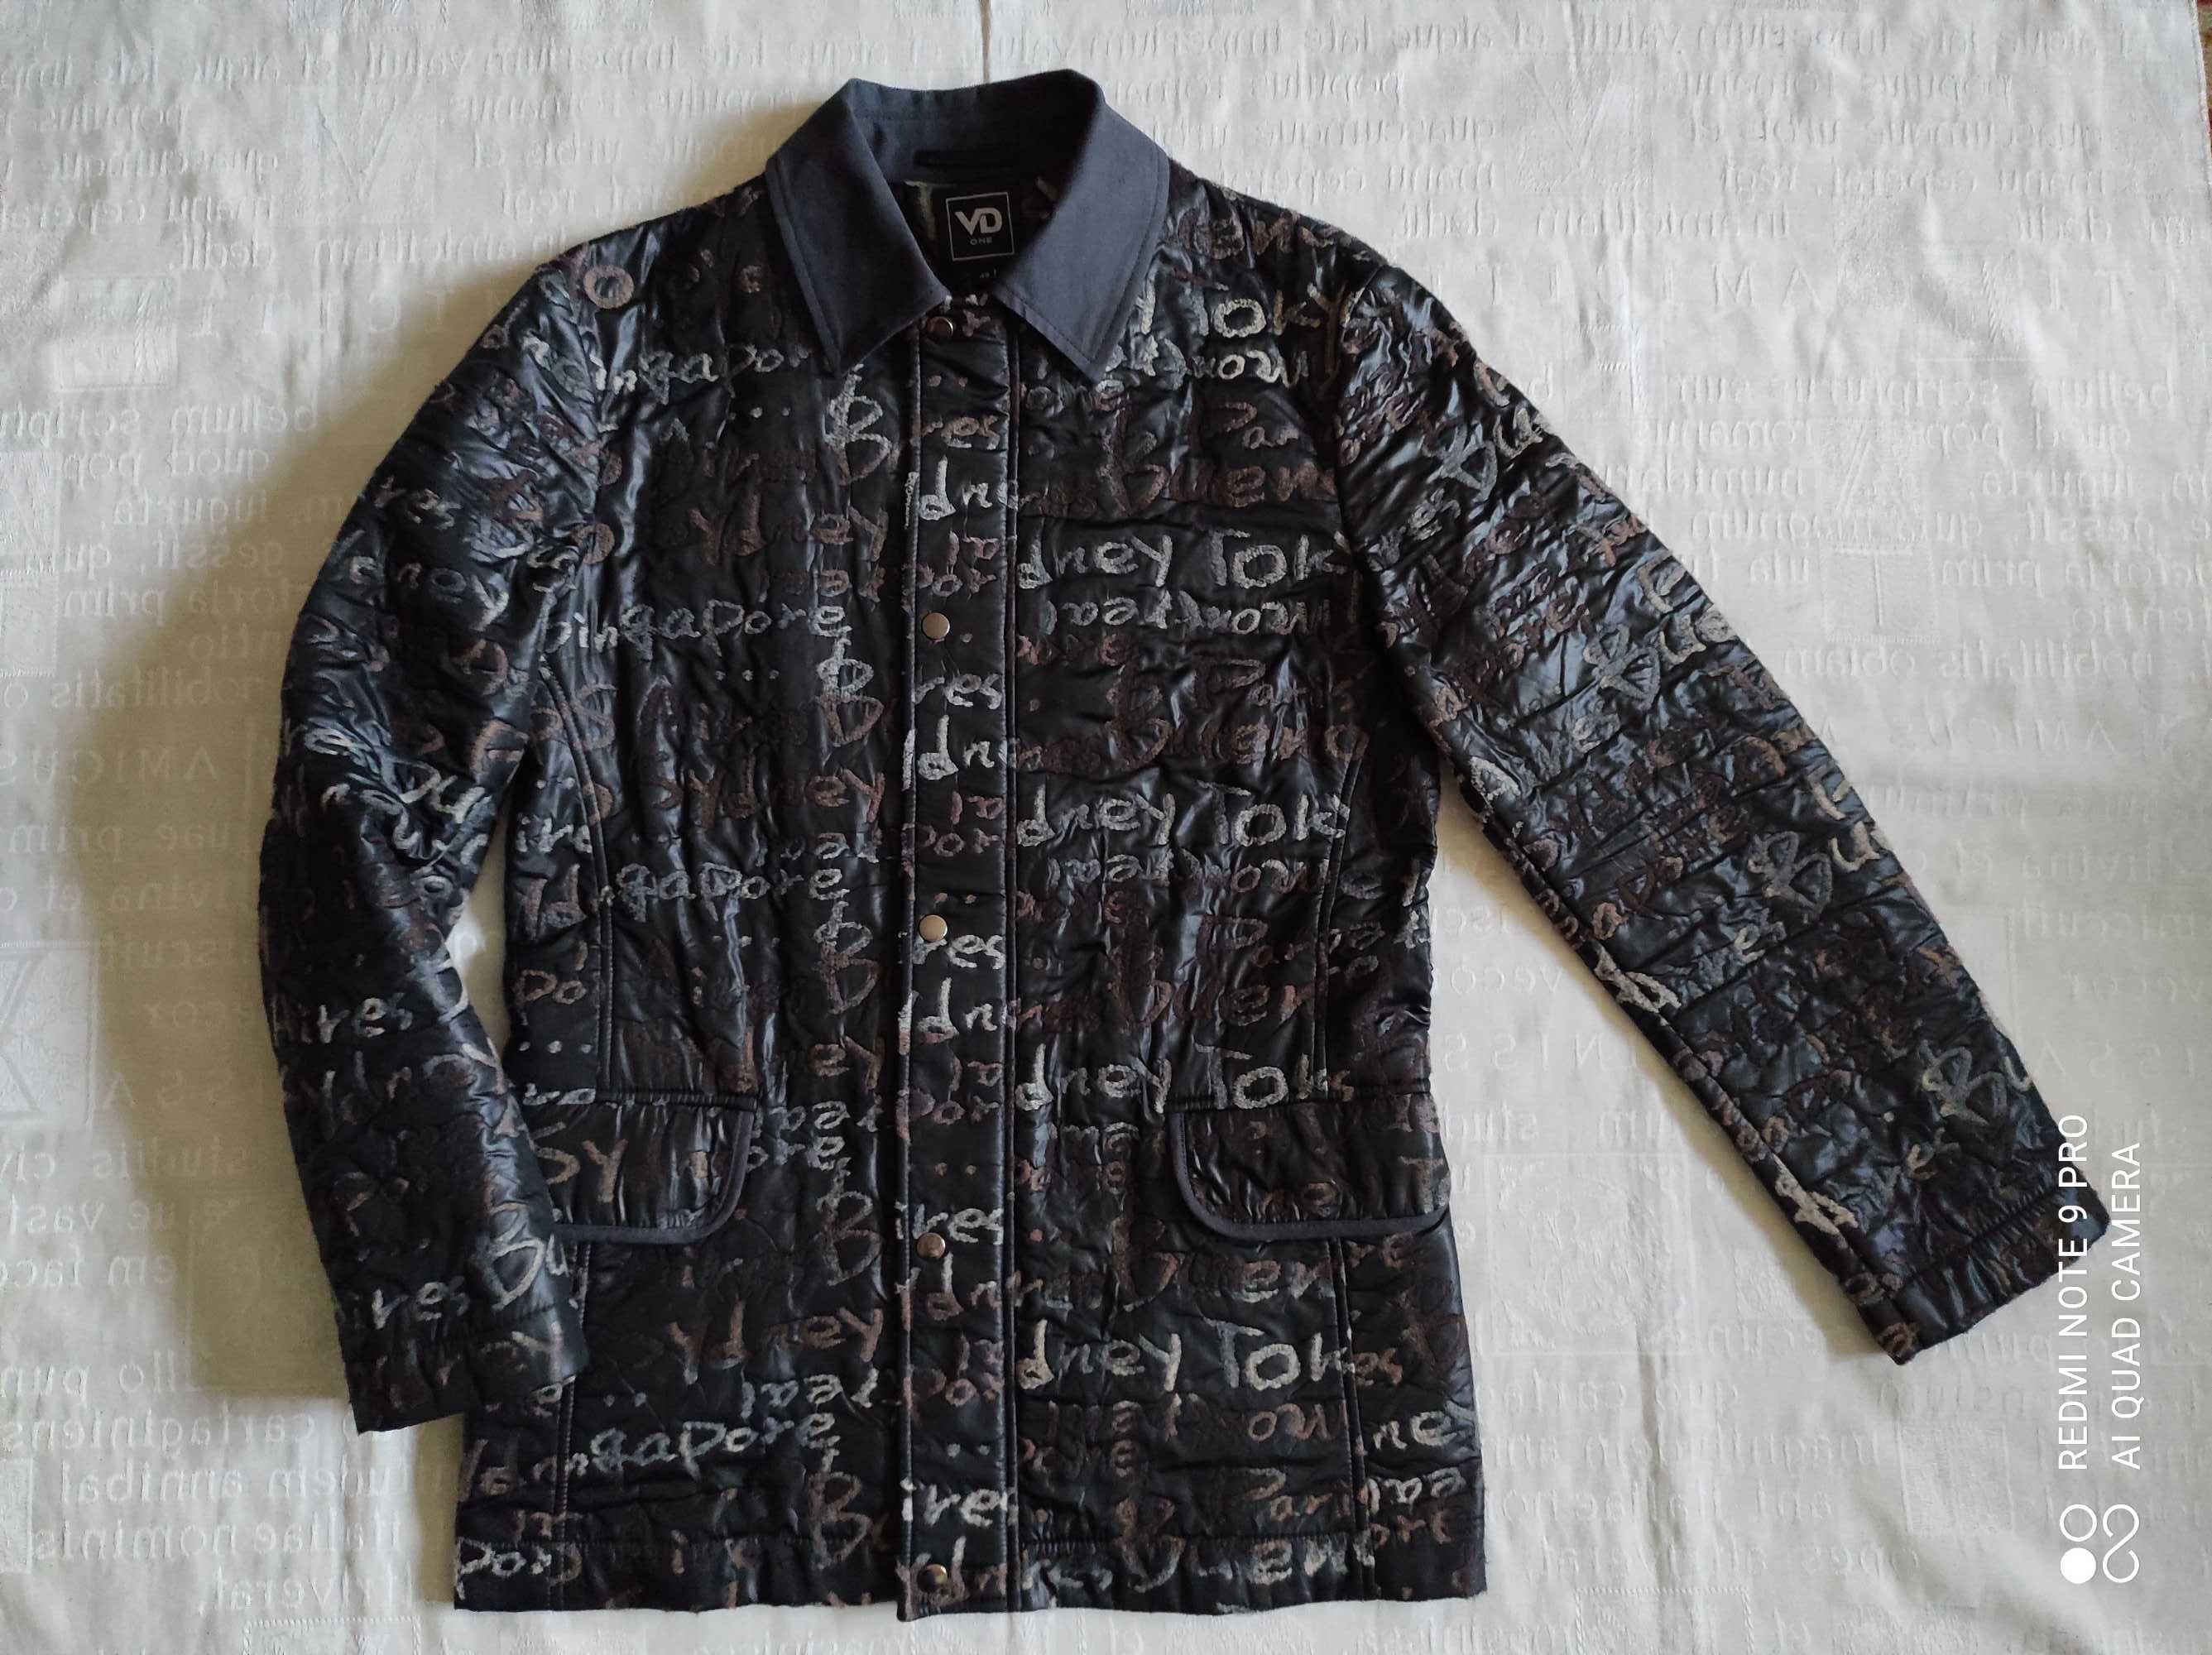 Новая куртка VD One весна р. M (46-48), пиджак, демисезонная